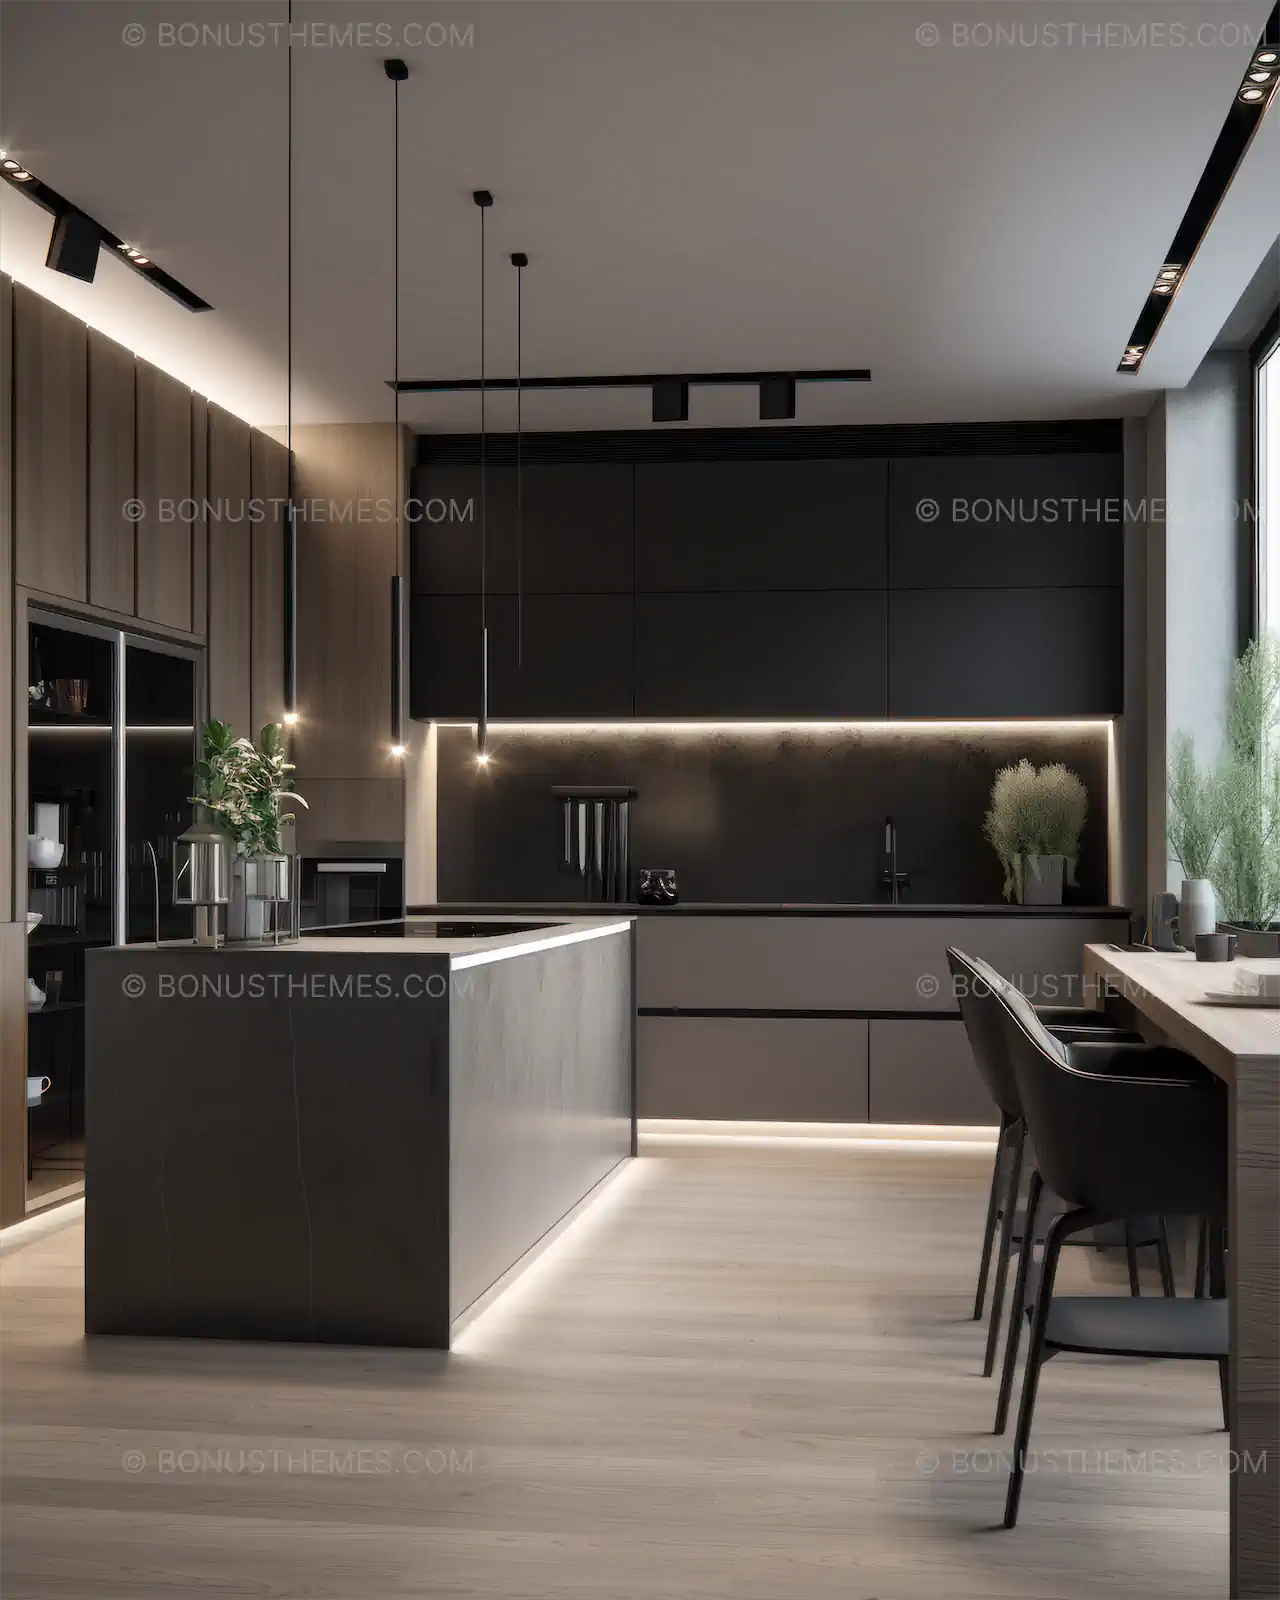 Modern kitchen with hidden lights